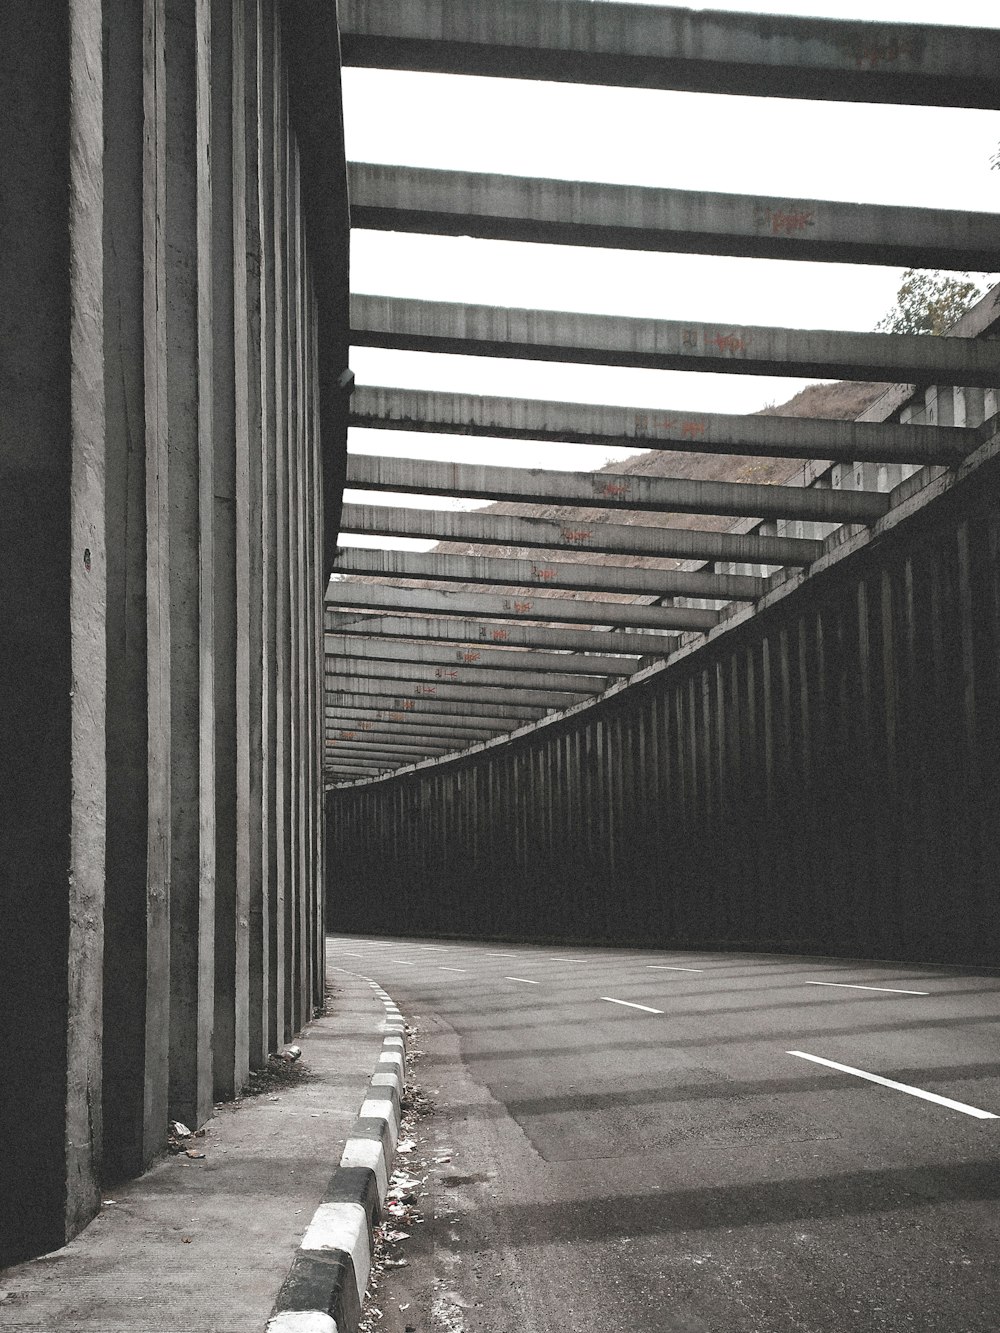 brown wooden pathway in between gray concrete walls